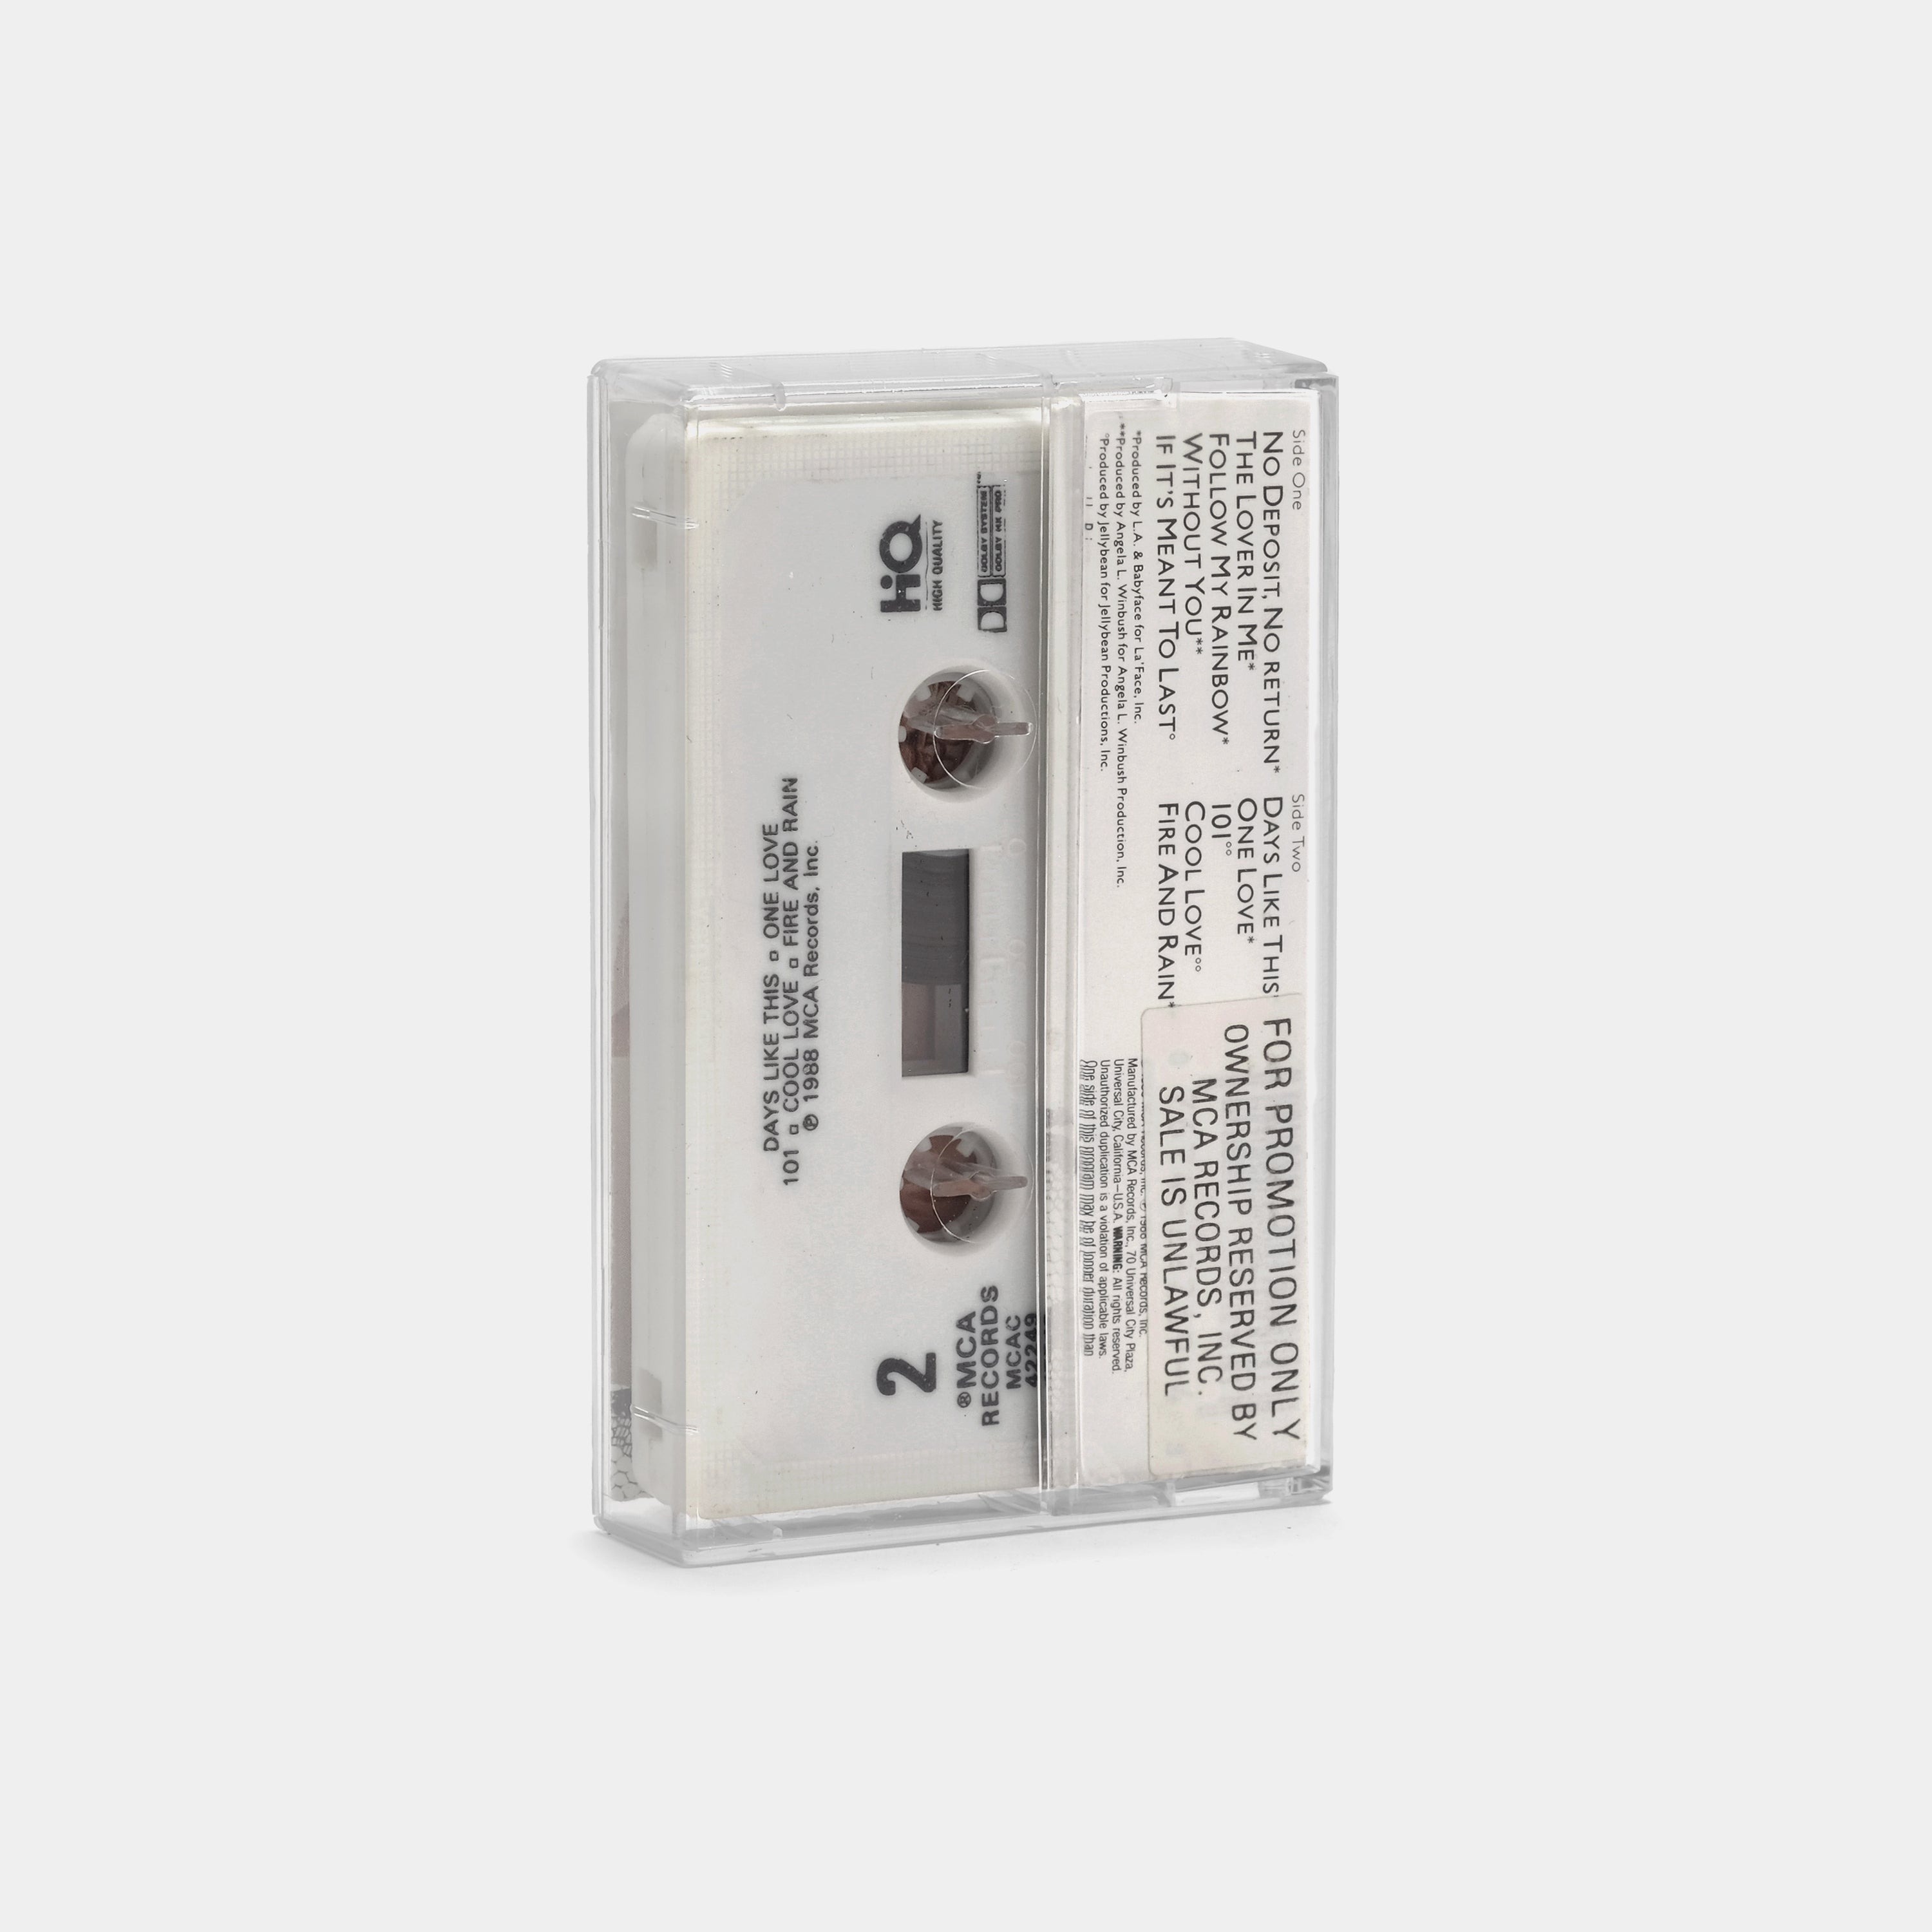 Sheena Easton - The Lover In Me Cassette Tape